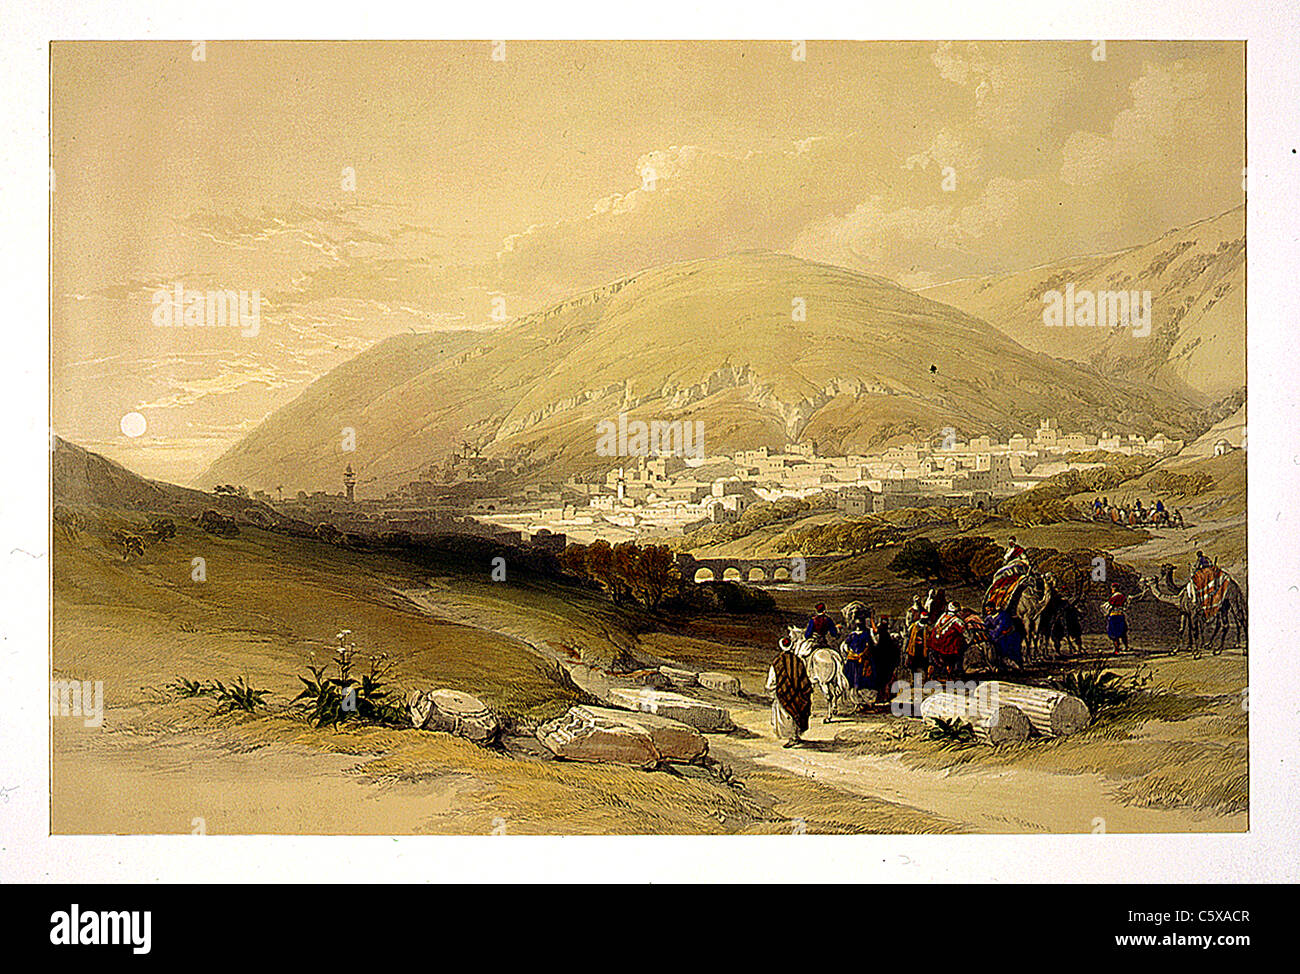 Naplouse antique Chechem 17 avril 1839, Louis Haghe / David Roberts 'la Terre Sainte, Syrie, Iduméa, Arabie, Egypte et Nubie' Banque D'Images